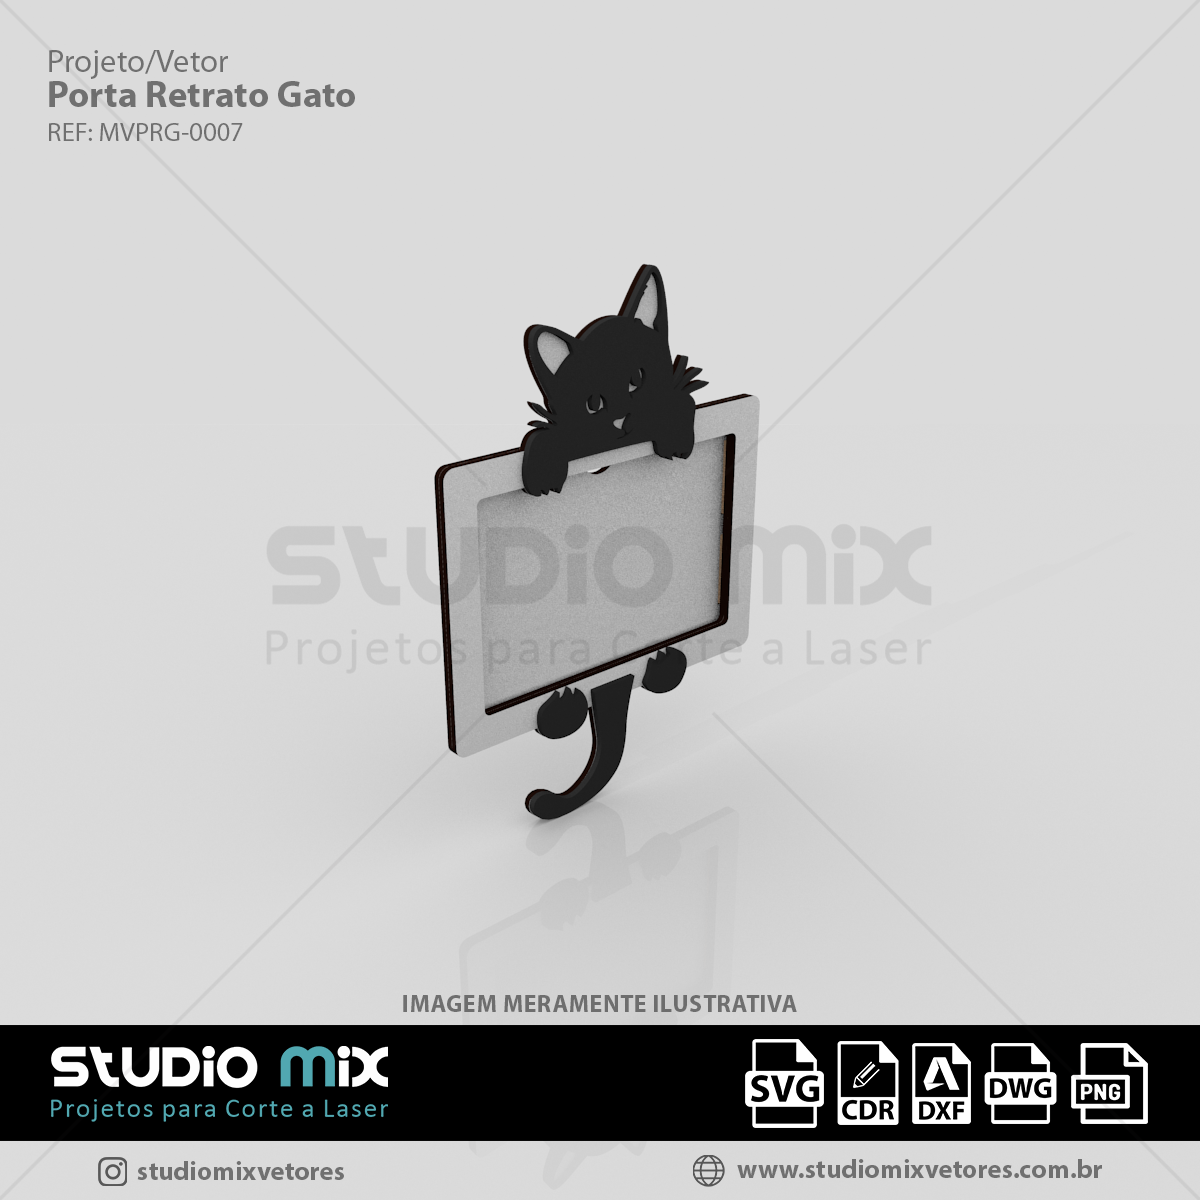 Desenho de gato cinza fofo, Vetor Premium